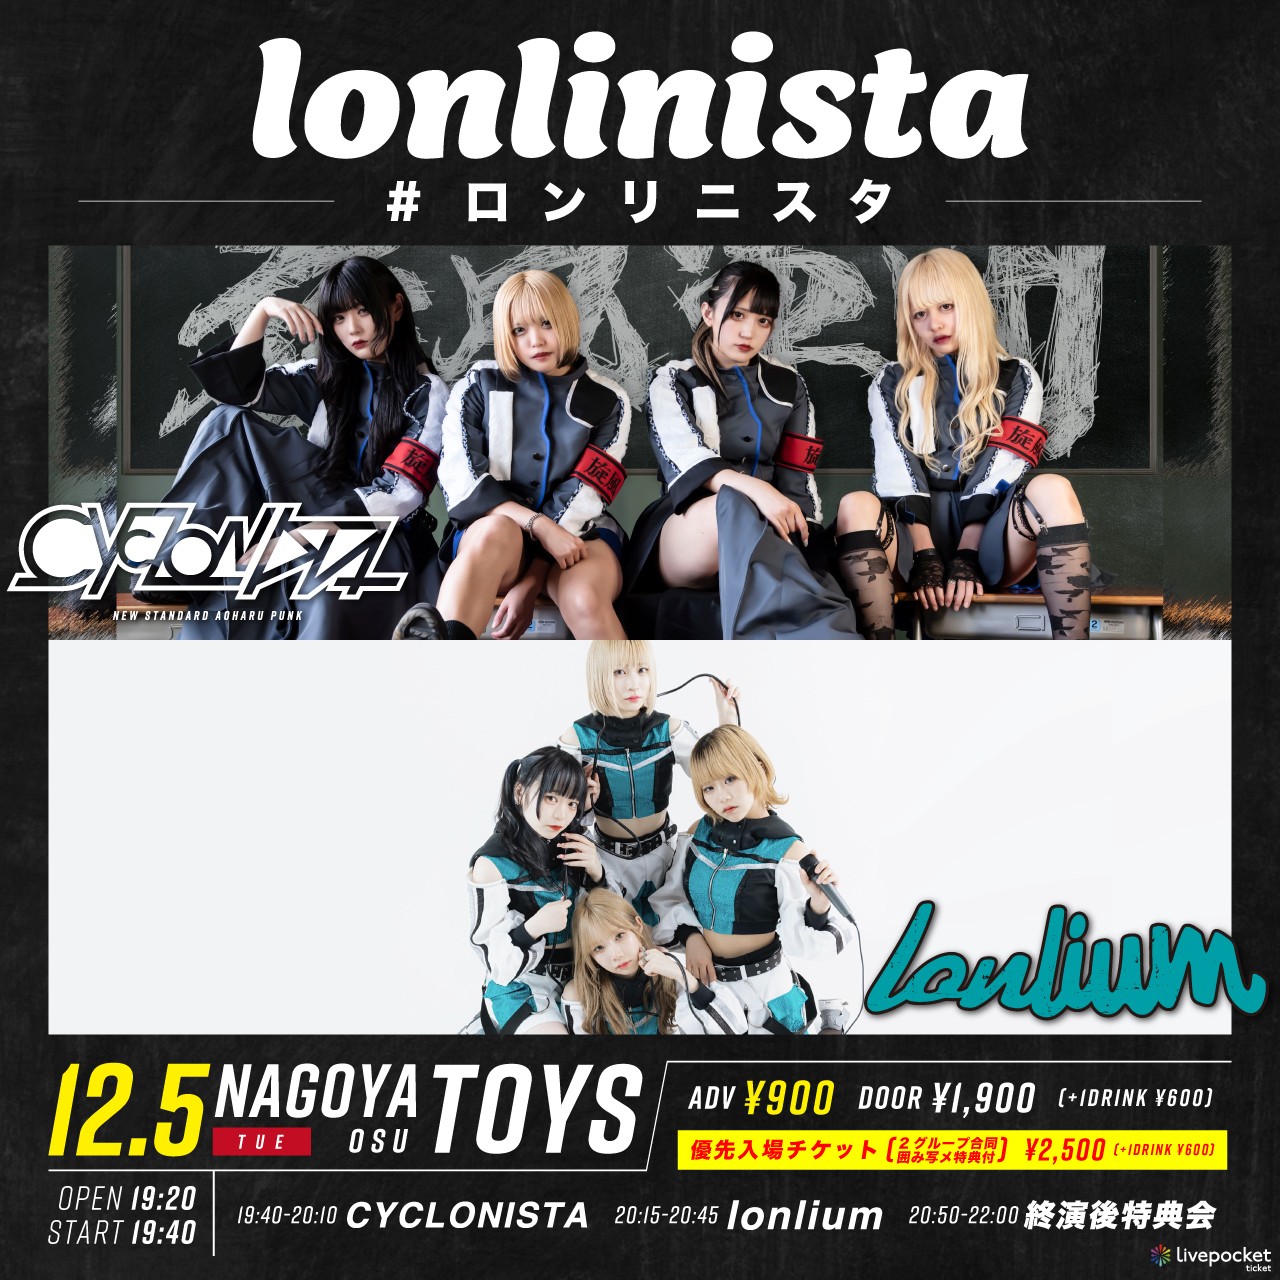 lonlinista -#ロンリ二スタ-